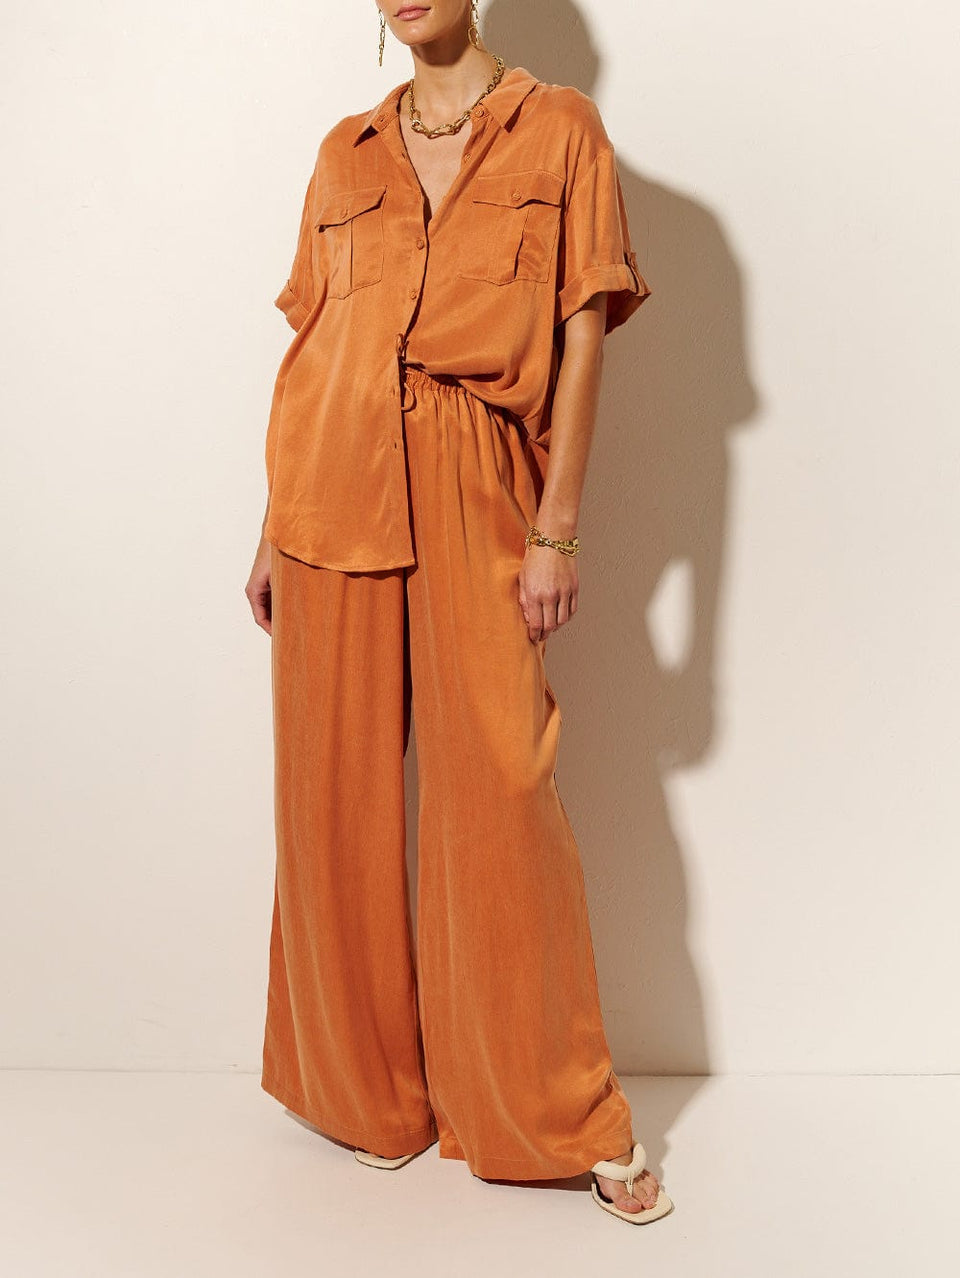 KIVARI Bianca Pant | Model wears Orange Pant